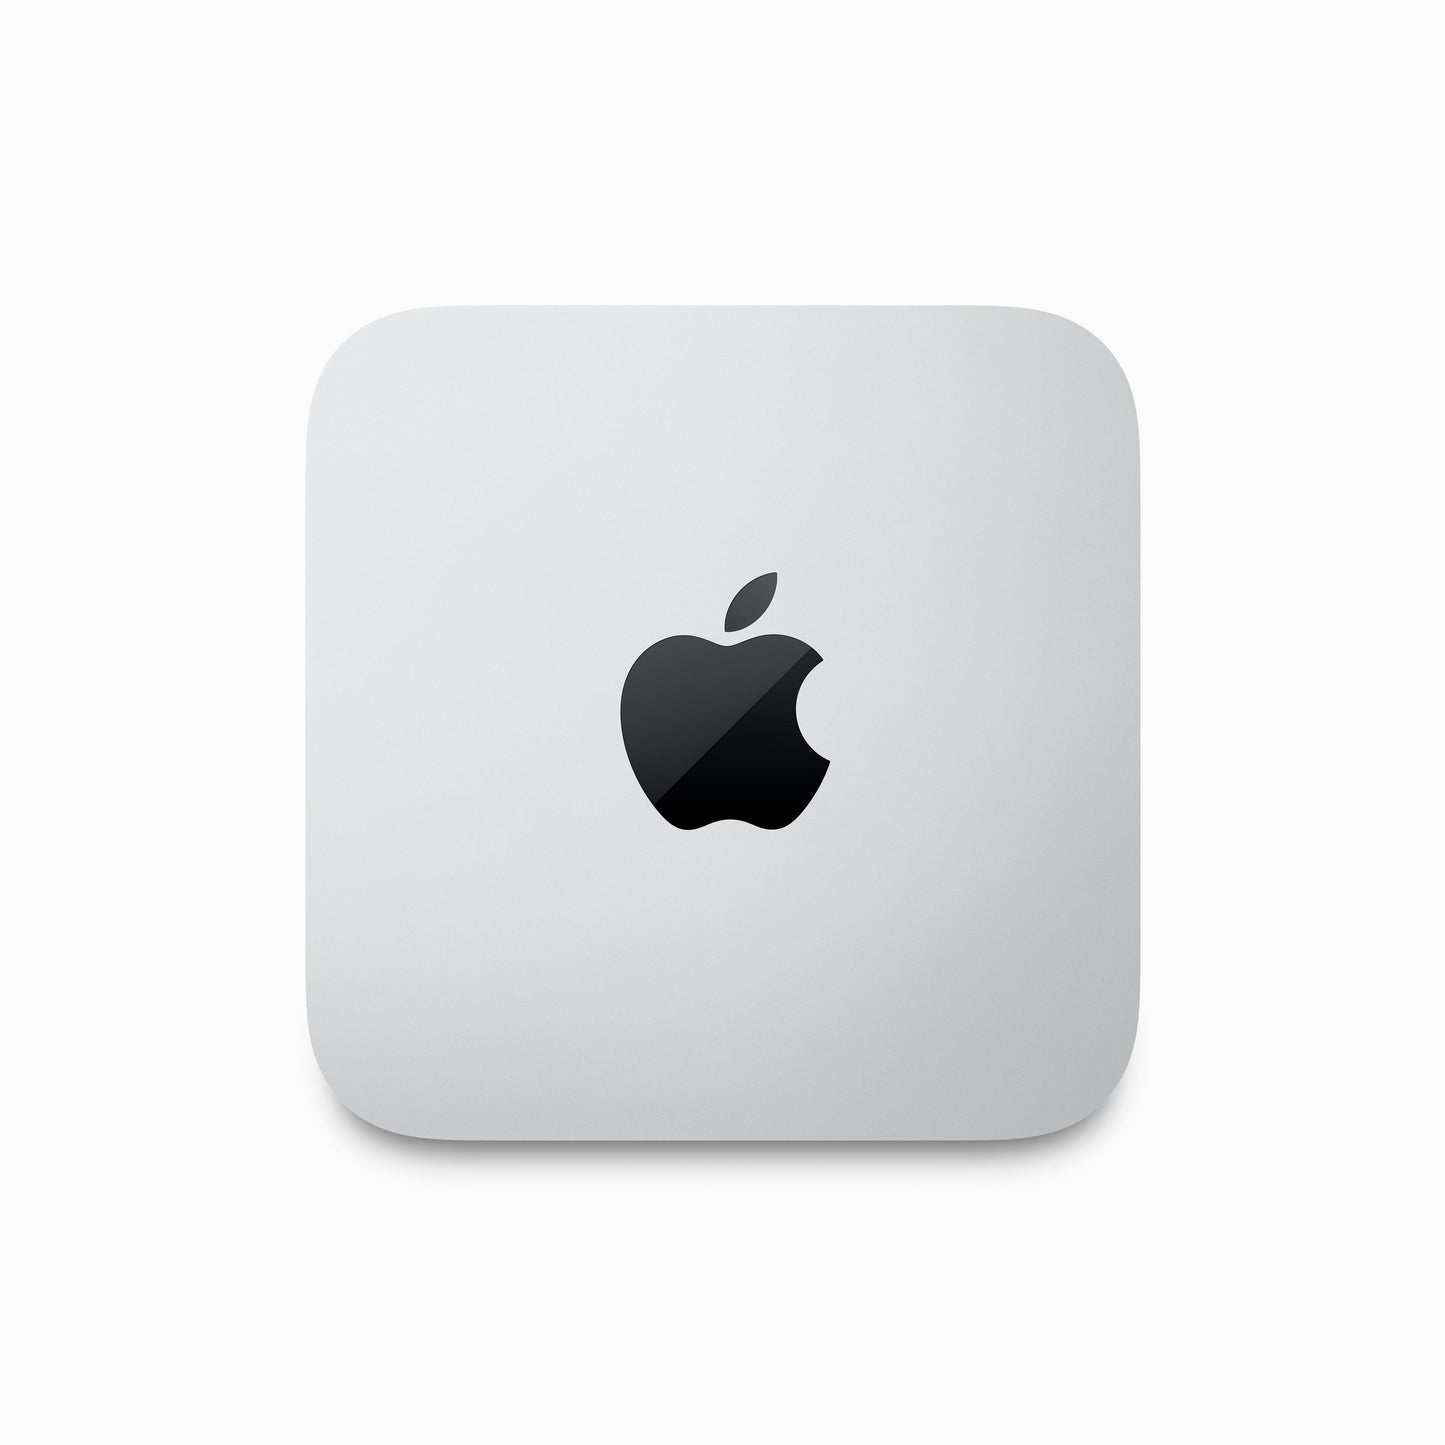 Mac Studio: Apple M2 Max with 12-core CPU, 30-core GPU, 16-core Neural Engine, 512GB SSD